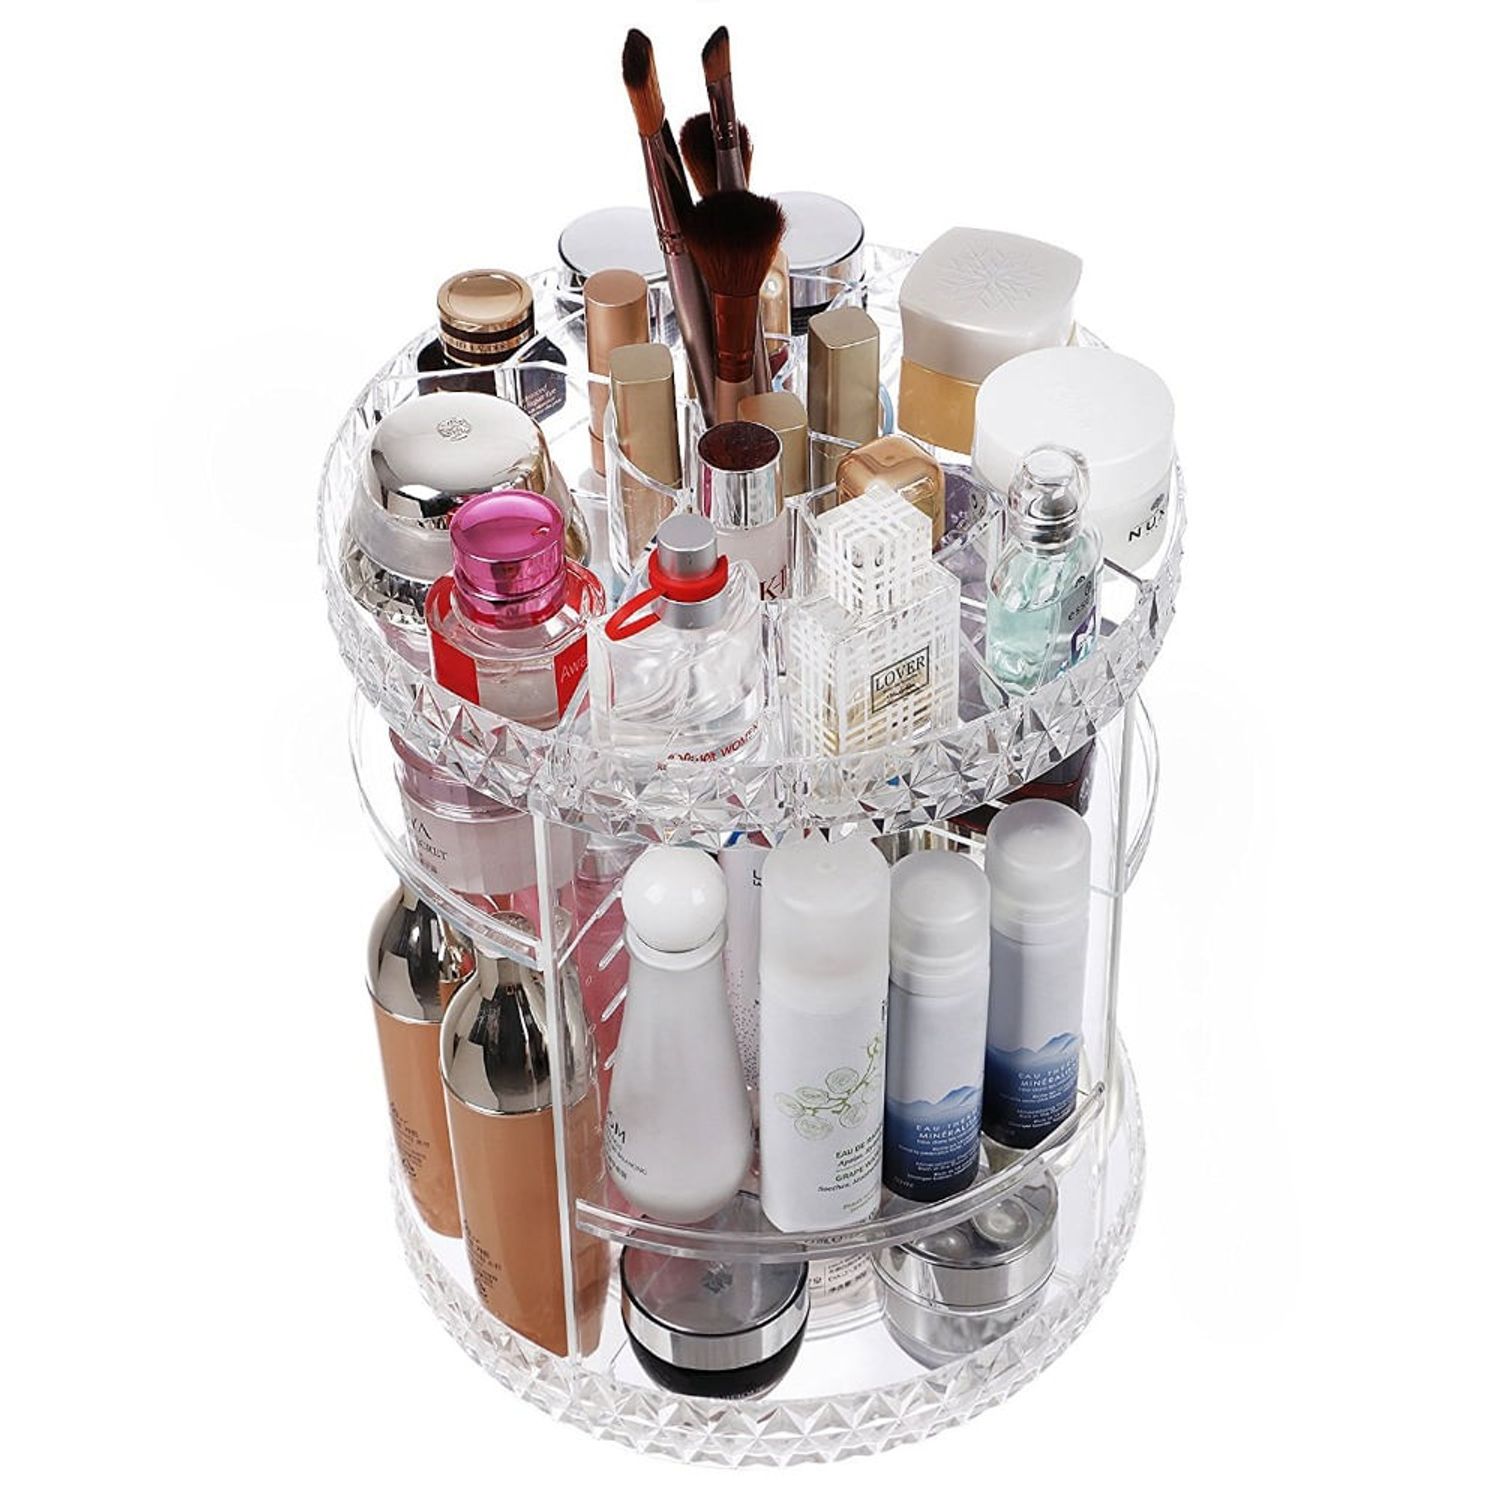 Organizador de Maquillaje Cosmeticos con Rotacion 360 Grados | Oechsle - Oechsle